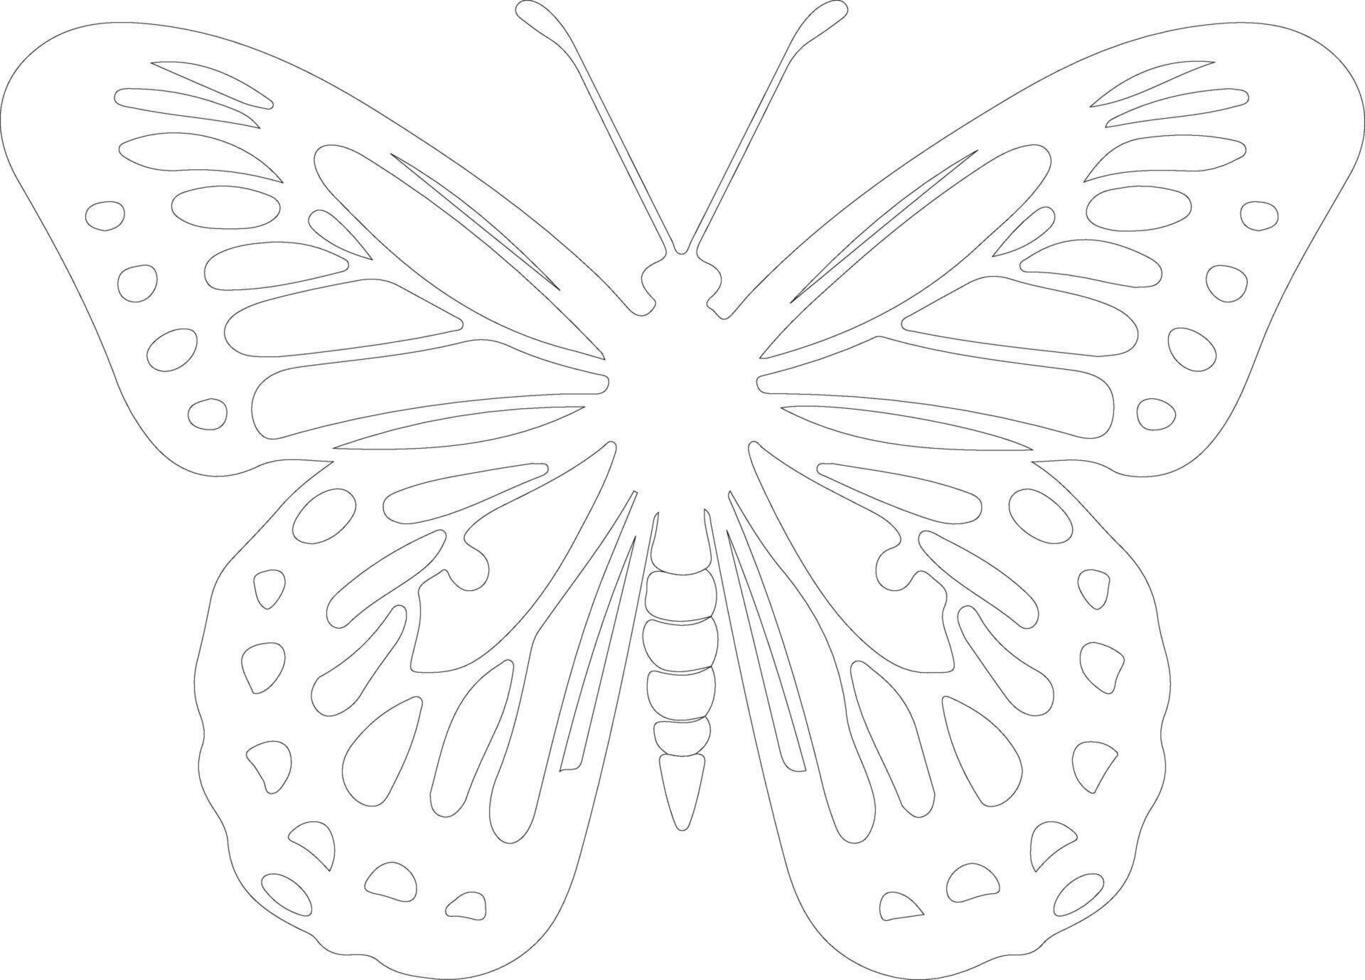 Oregon tache d'argent papillon contour silhouette vecteur